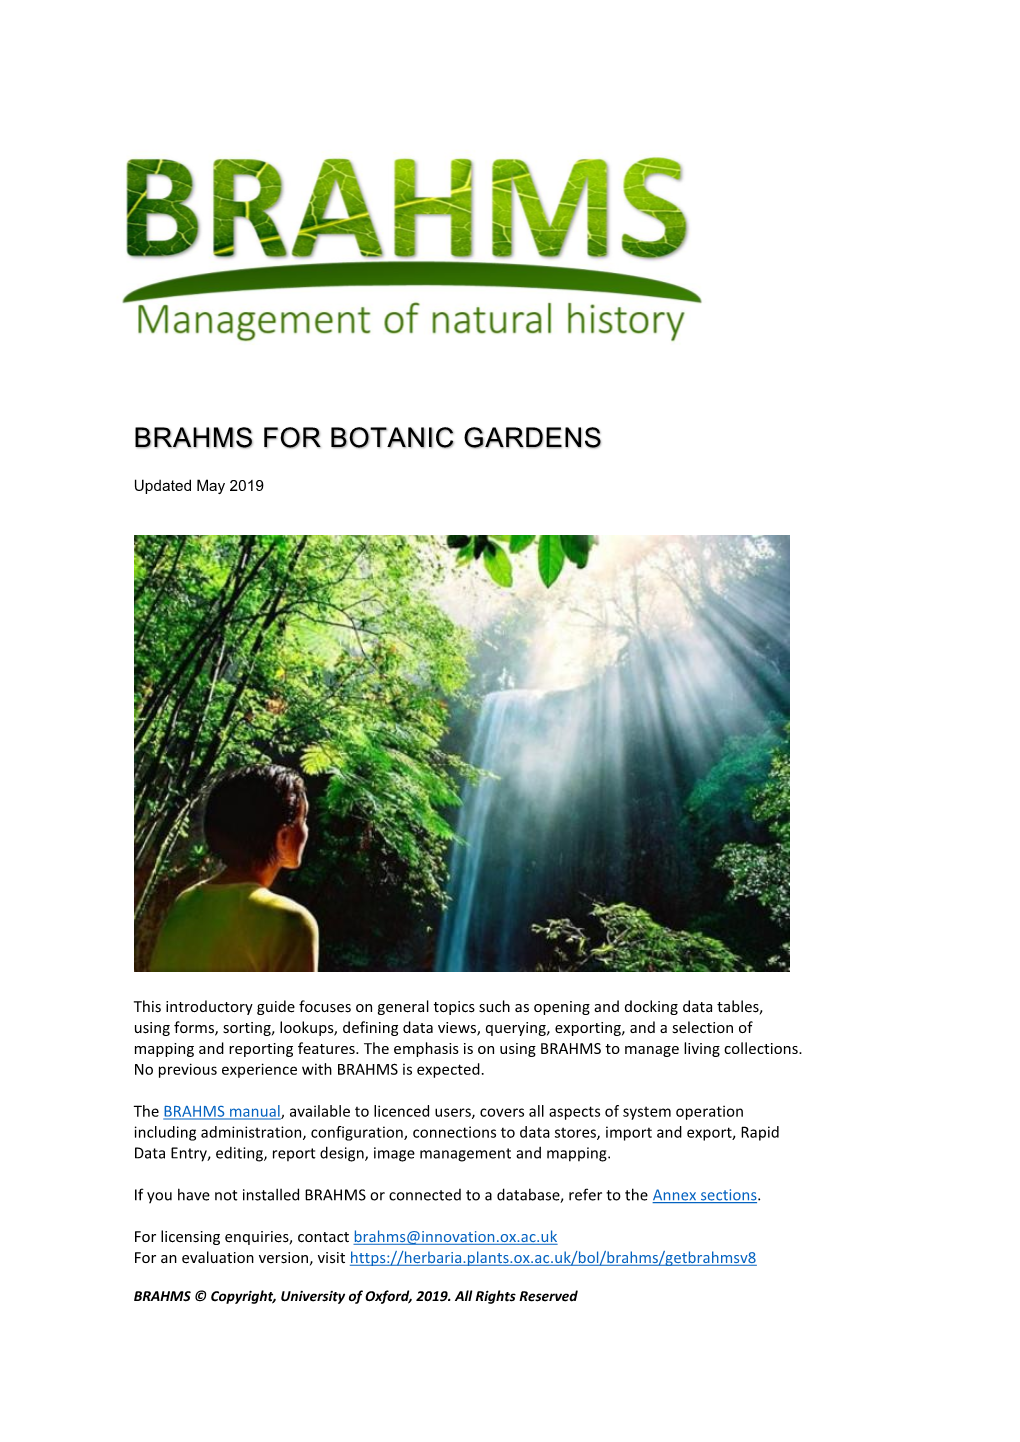 Brahms for Botanic Gardens